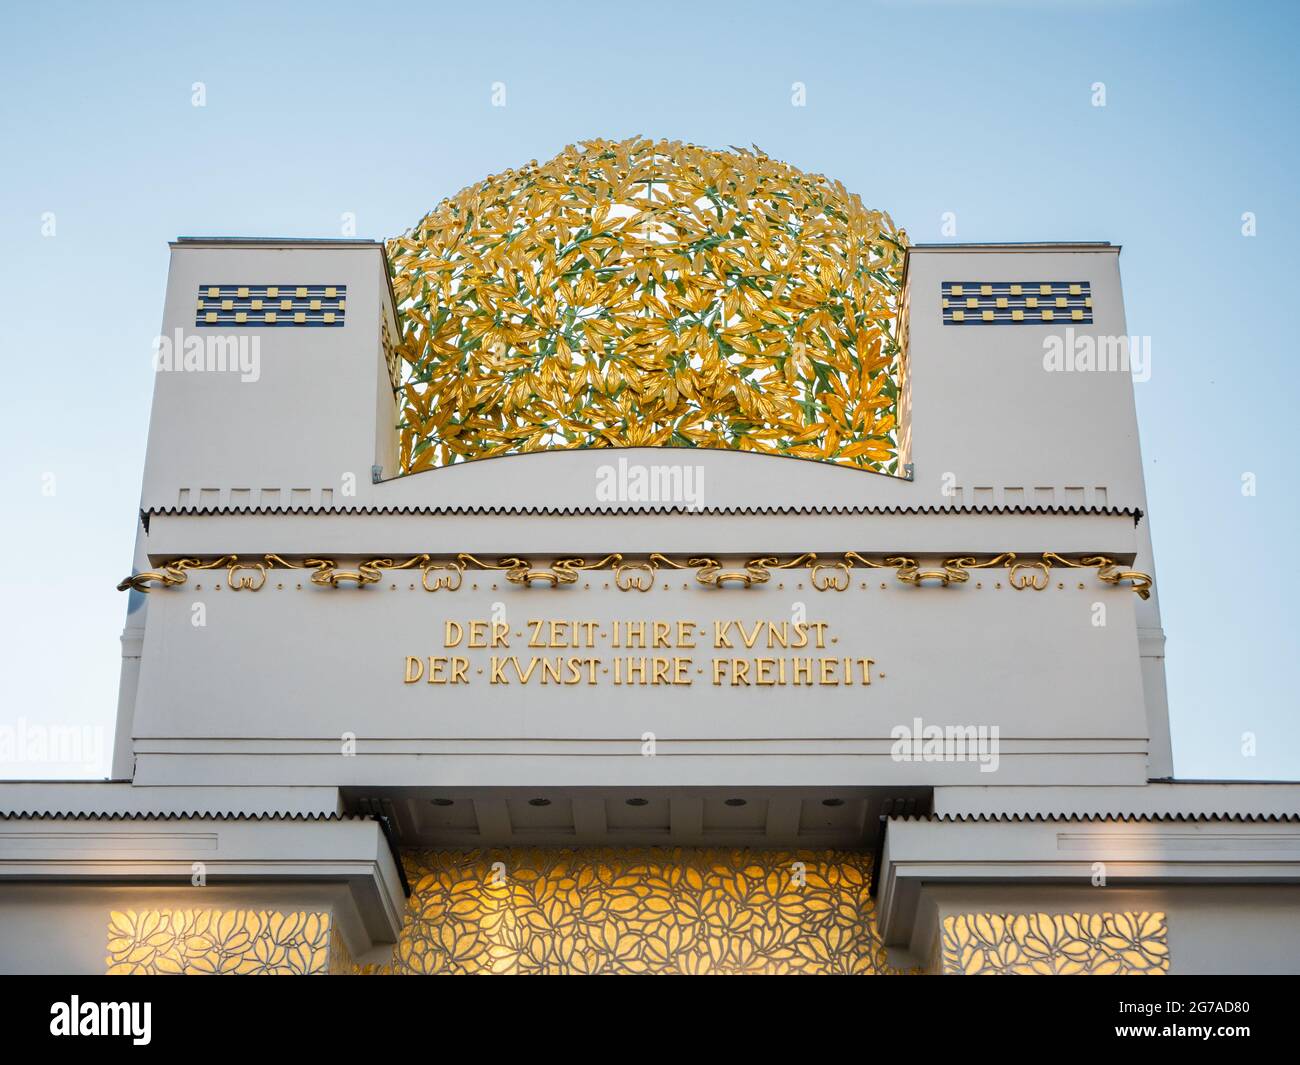 Secession Building Golden Dome in Wien, Österreich auch Wiener Secession genannt - mit der Inschrift "zu jedem Zeitalter seine Kunst, zu jeder Kunst seine Freiheit". Stockfoto